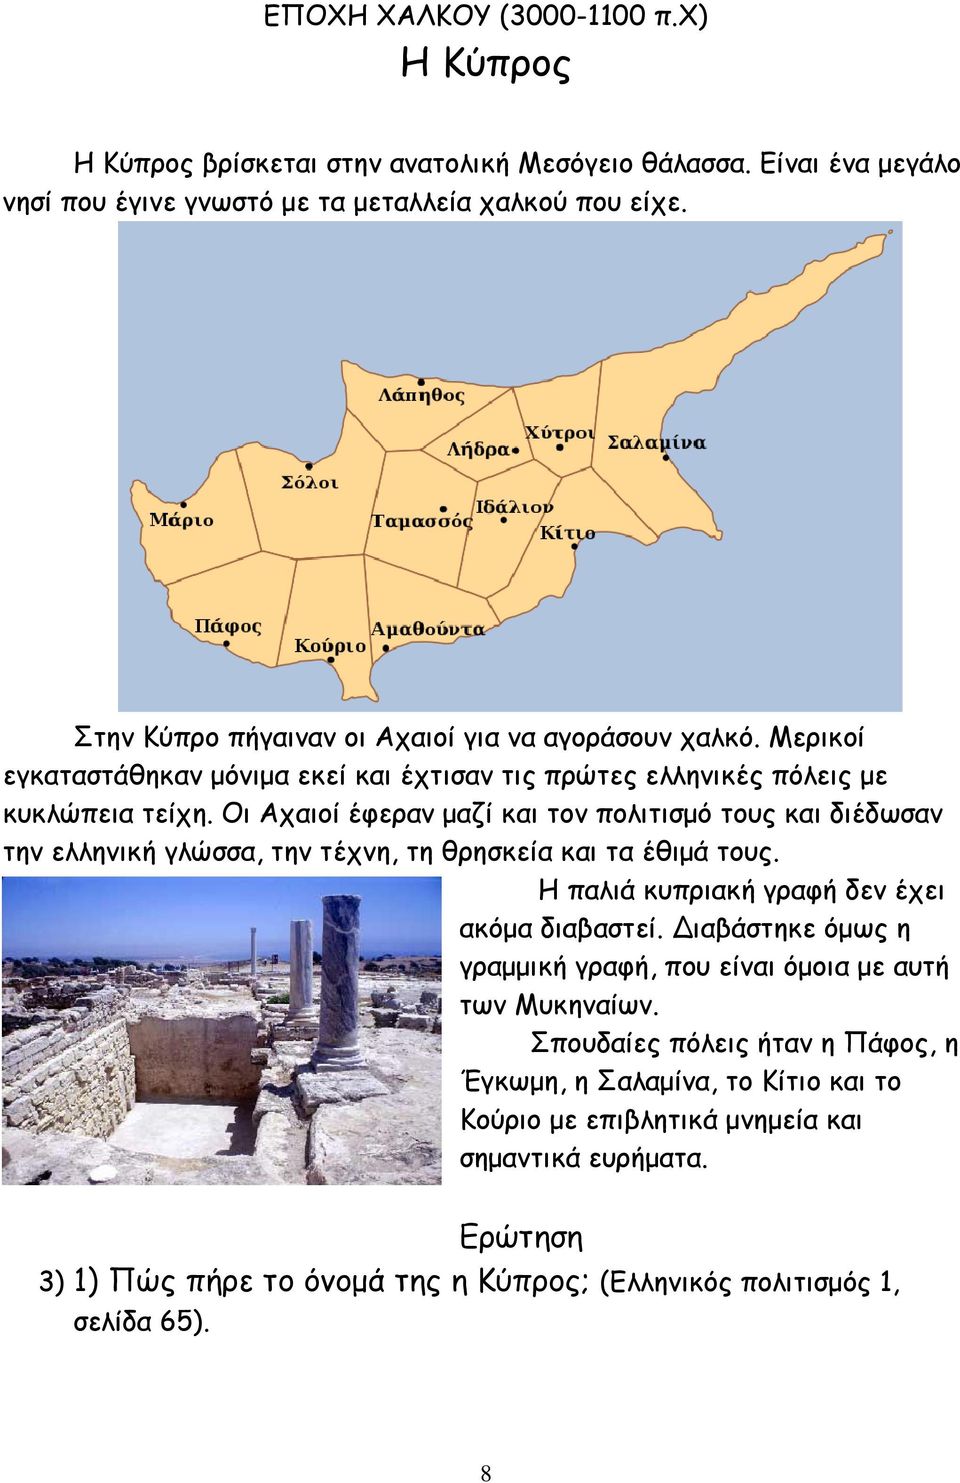 Οι Αχαιοί έφεραν µαζί και τον πολιτισµό τους και διέδωσαν την ελληνική γλώσσα, την τέχνη, τη θρησκεία και τα έθιµά τους. Η παλιά κυπριακή γραφή δεν έχει ακόµα διαβαστεί.